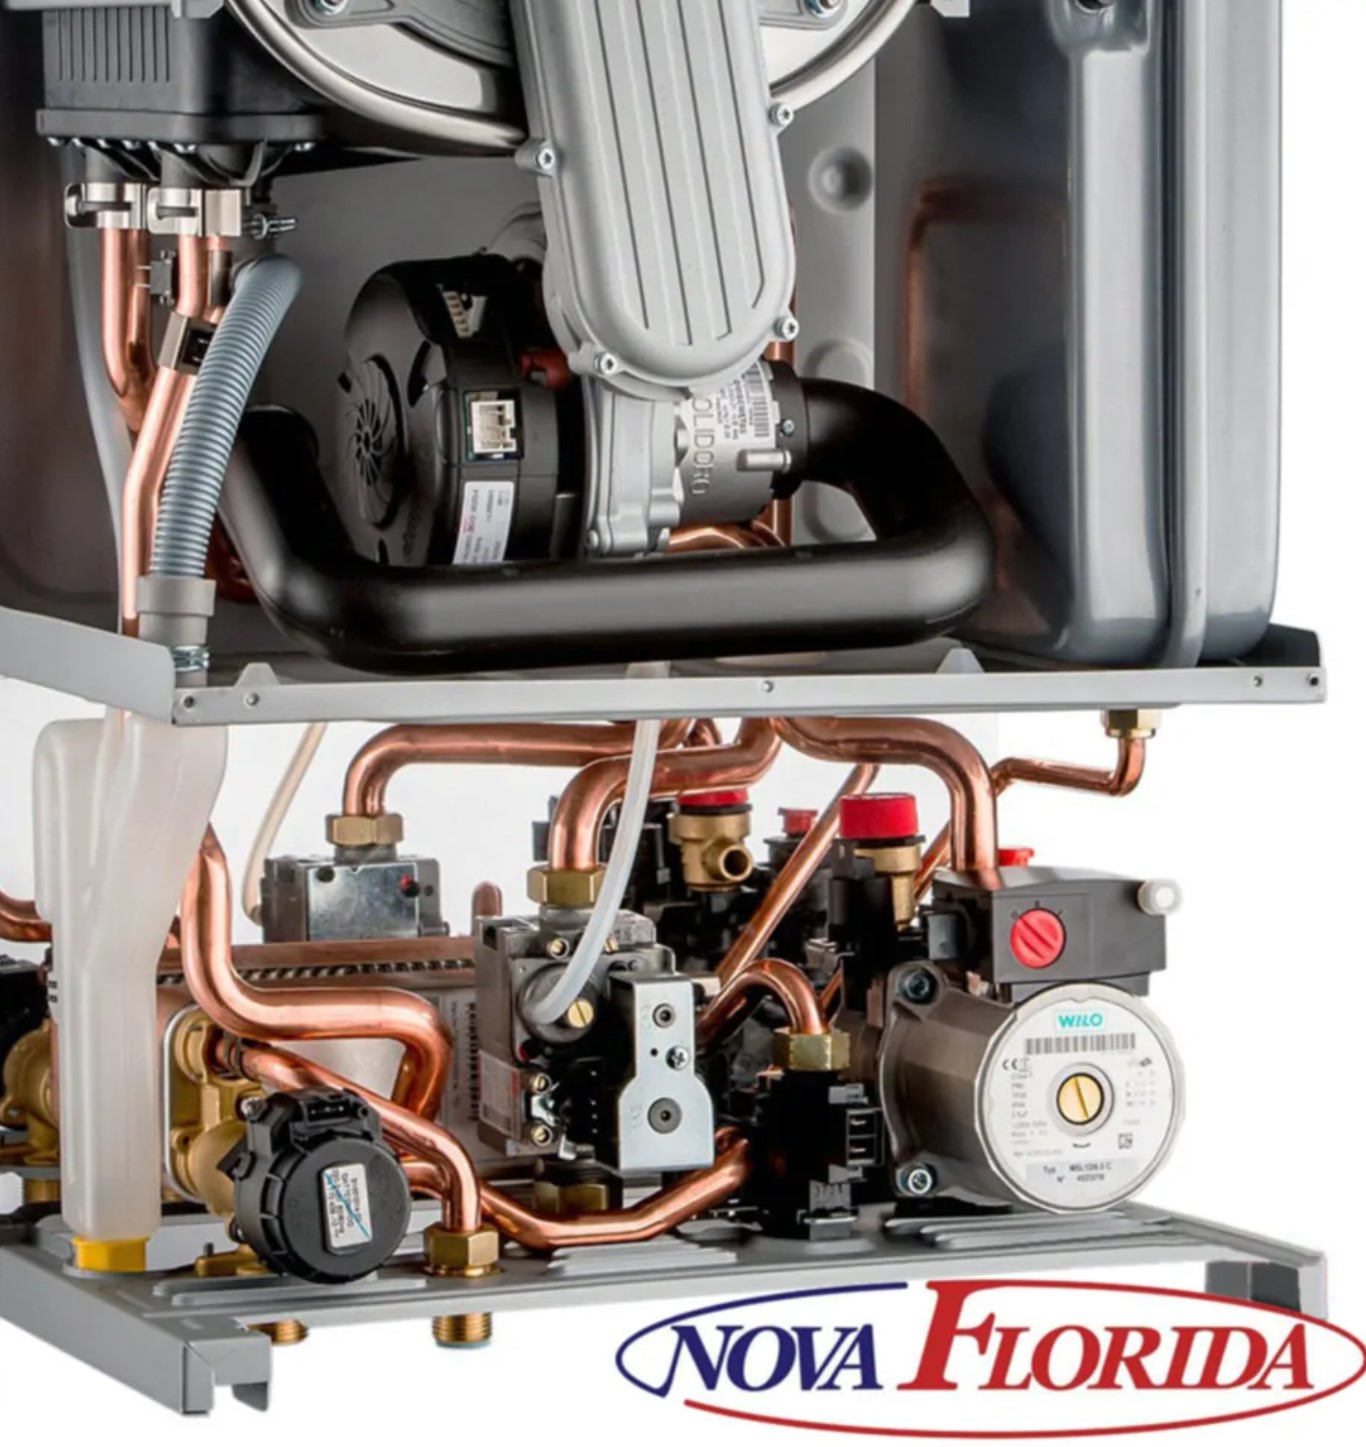 Газовый котел Nova Florida Virgo CTFS 28 цена 46423.00 грн - фотография 2